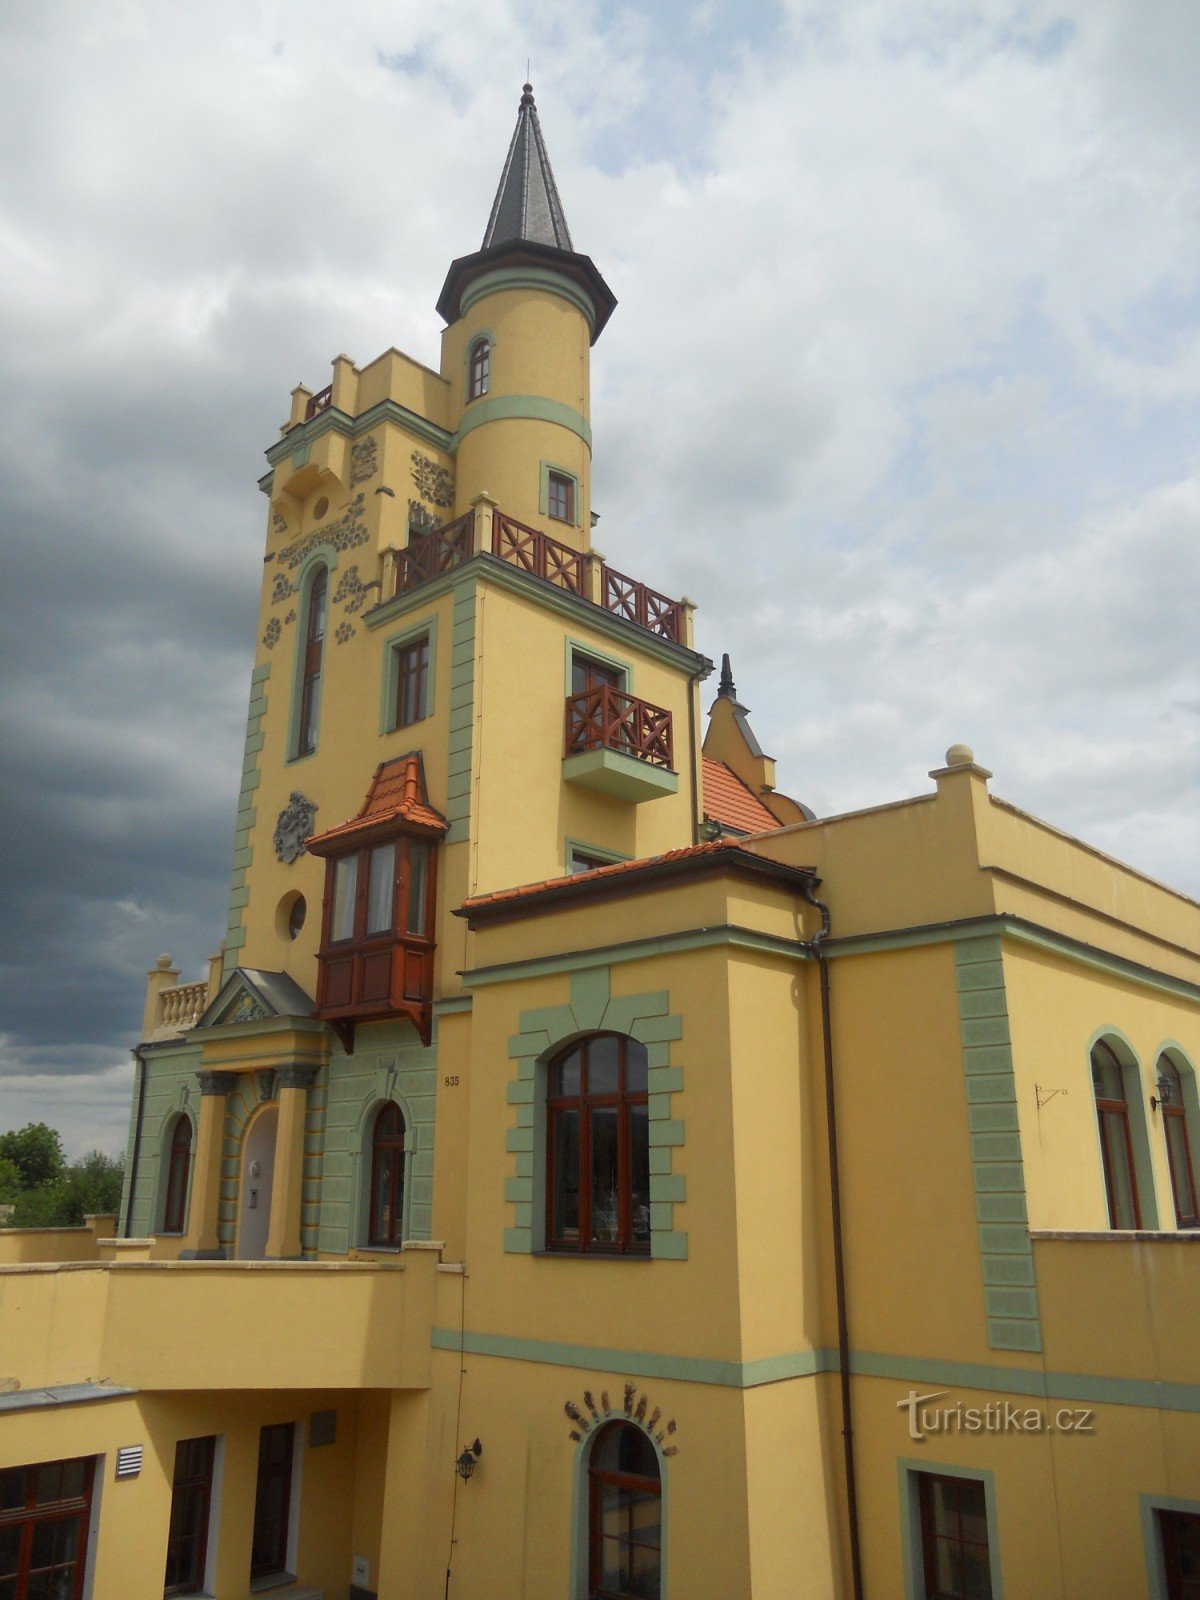 Смотровая башня Летна в Теплице.